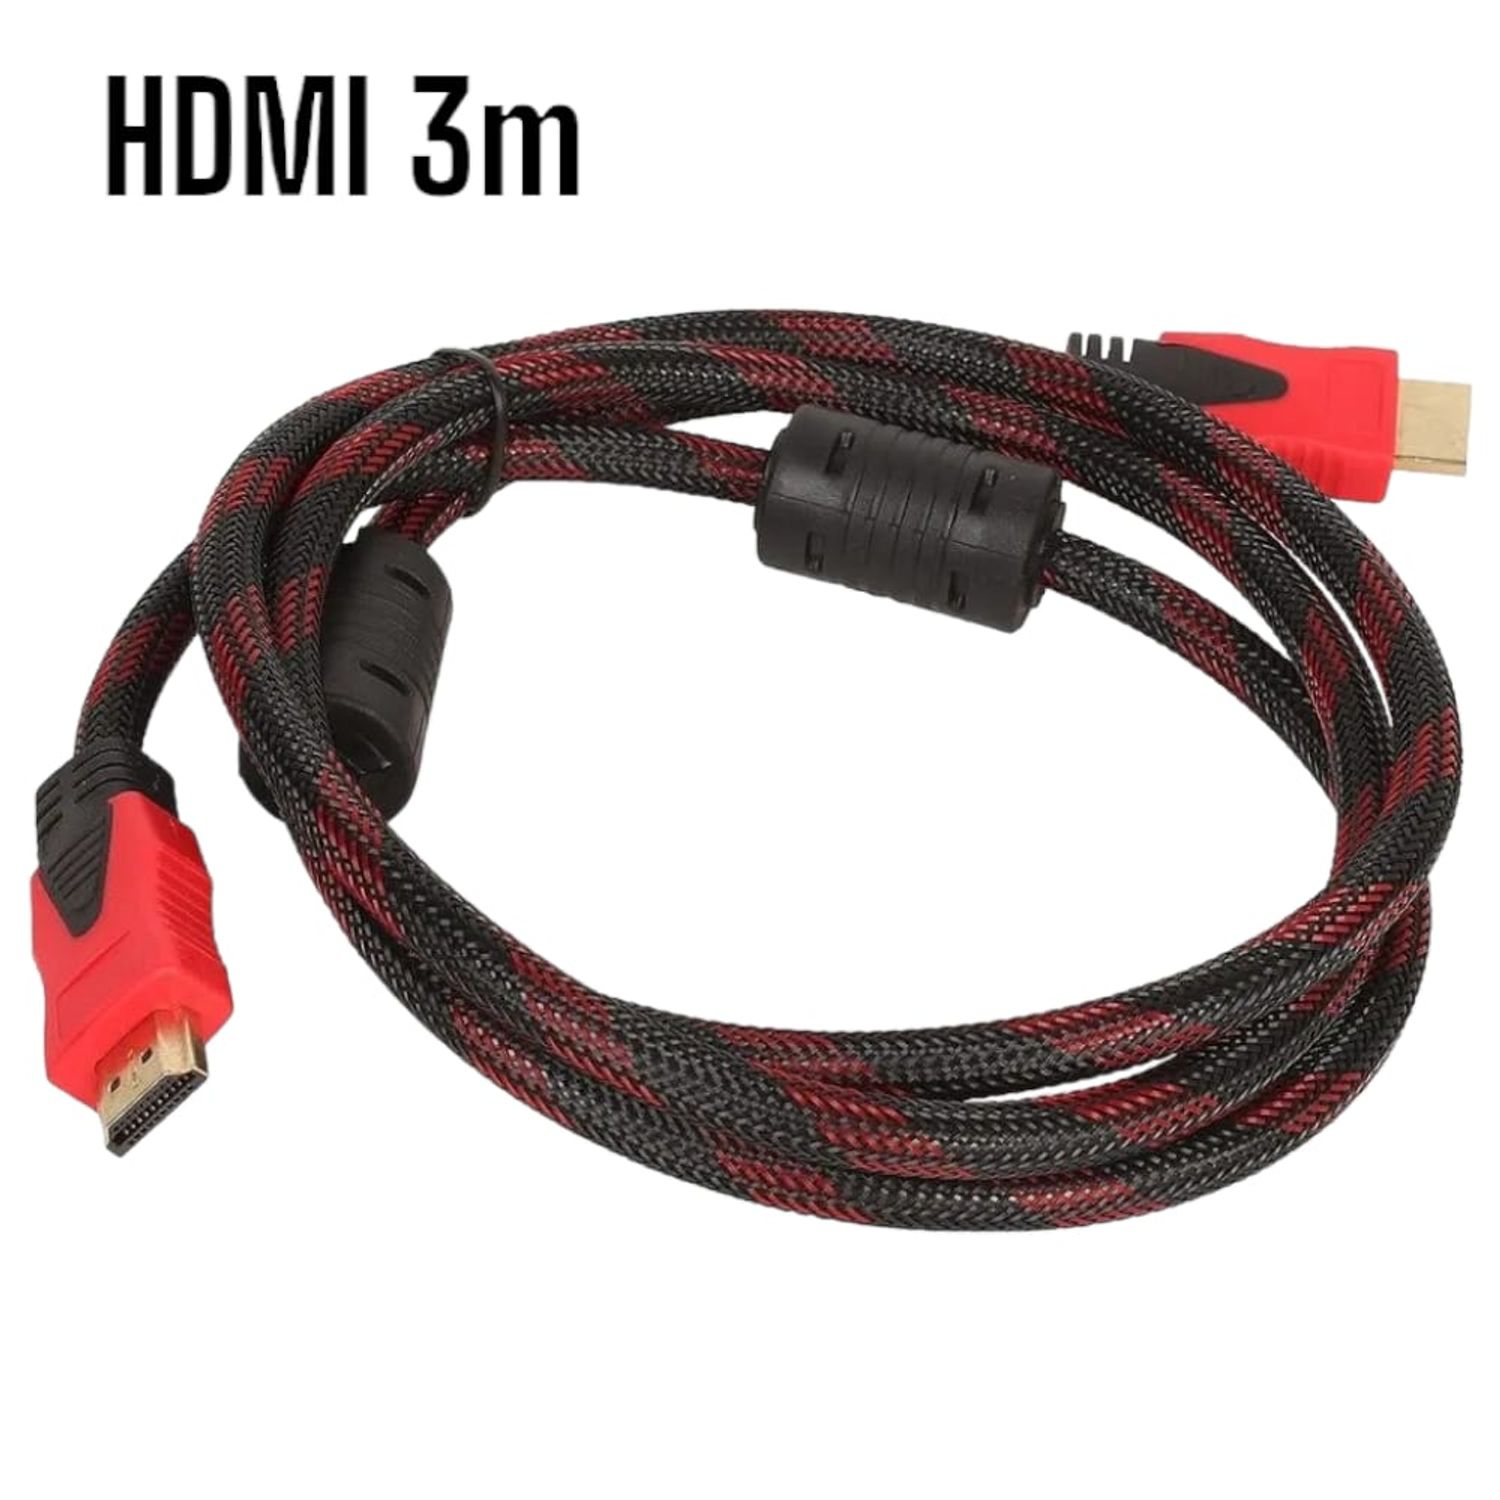 Ripley - CABLE HDMI-HDMI 3METROS CON FILTRO FULL HD